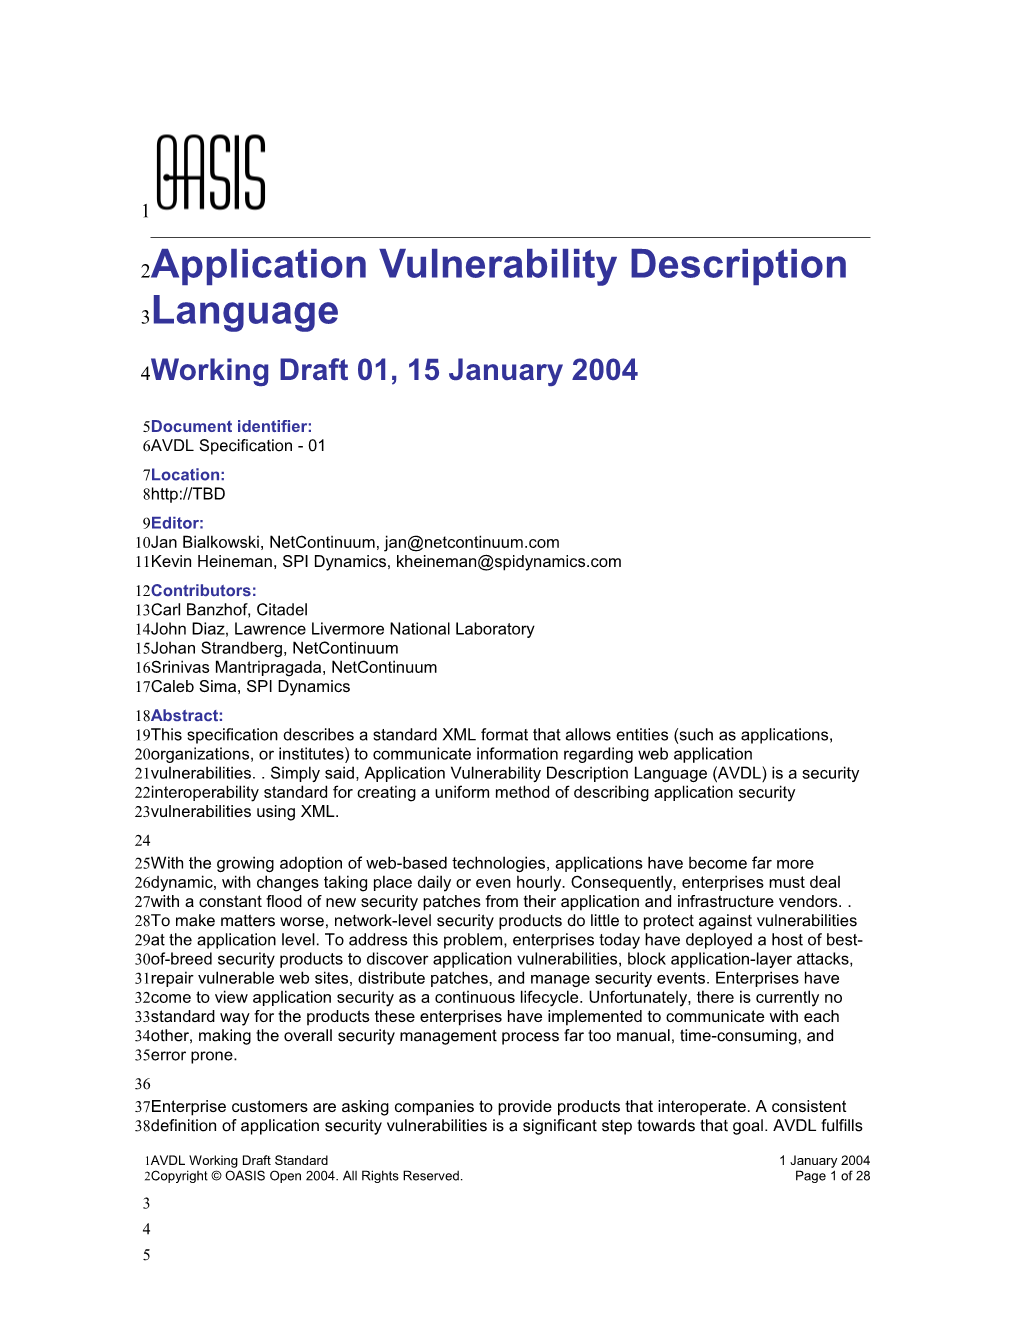 Application Vulnerability Description Language